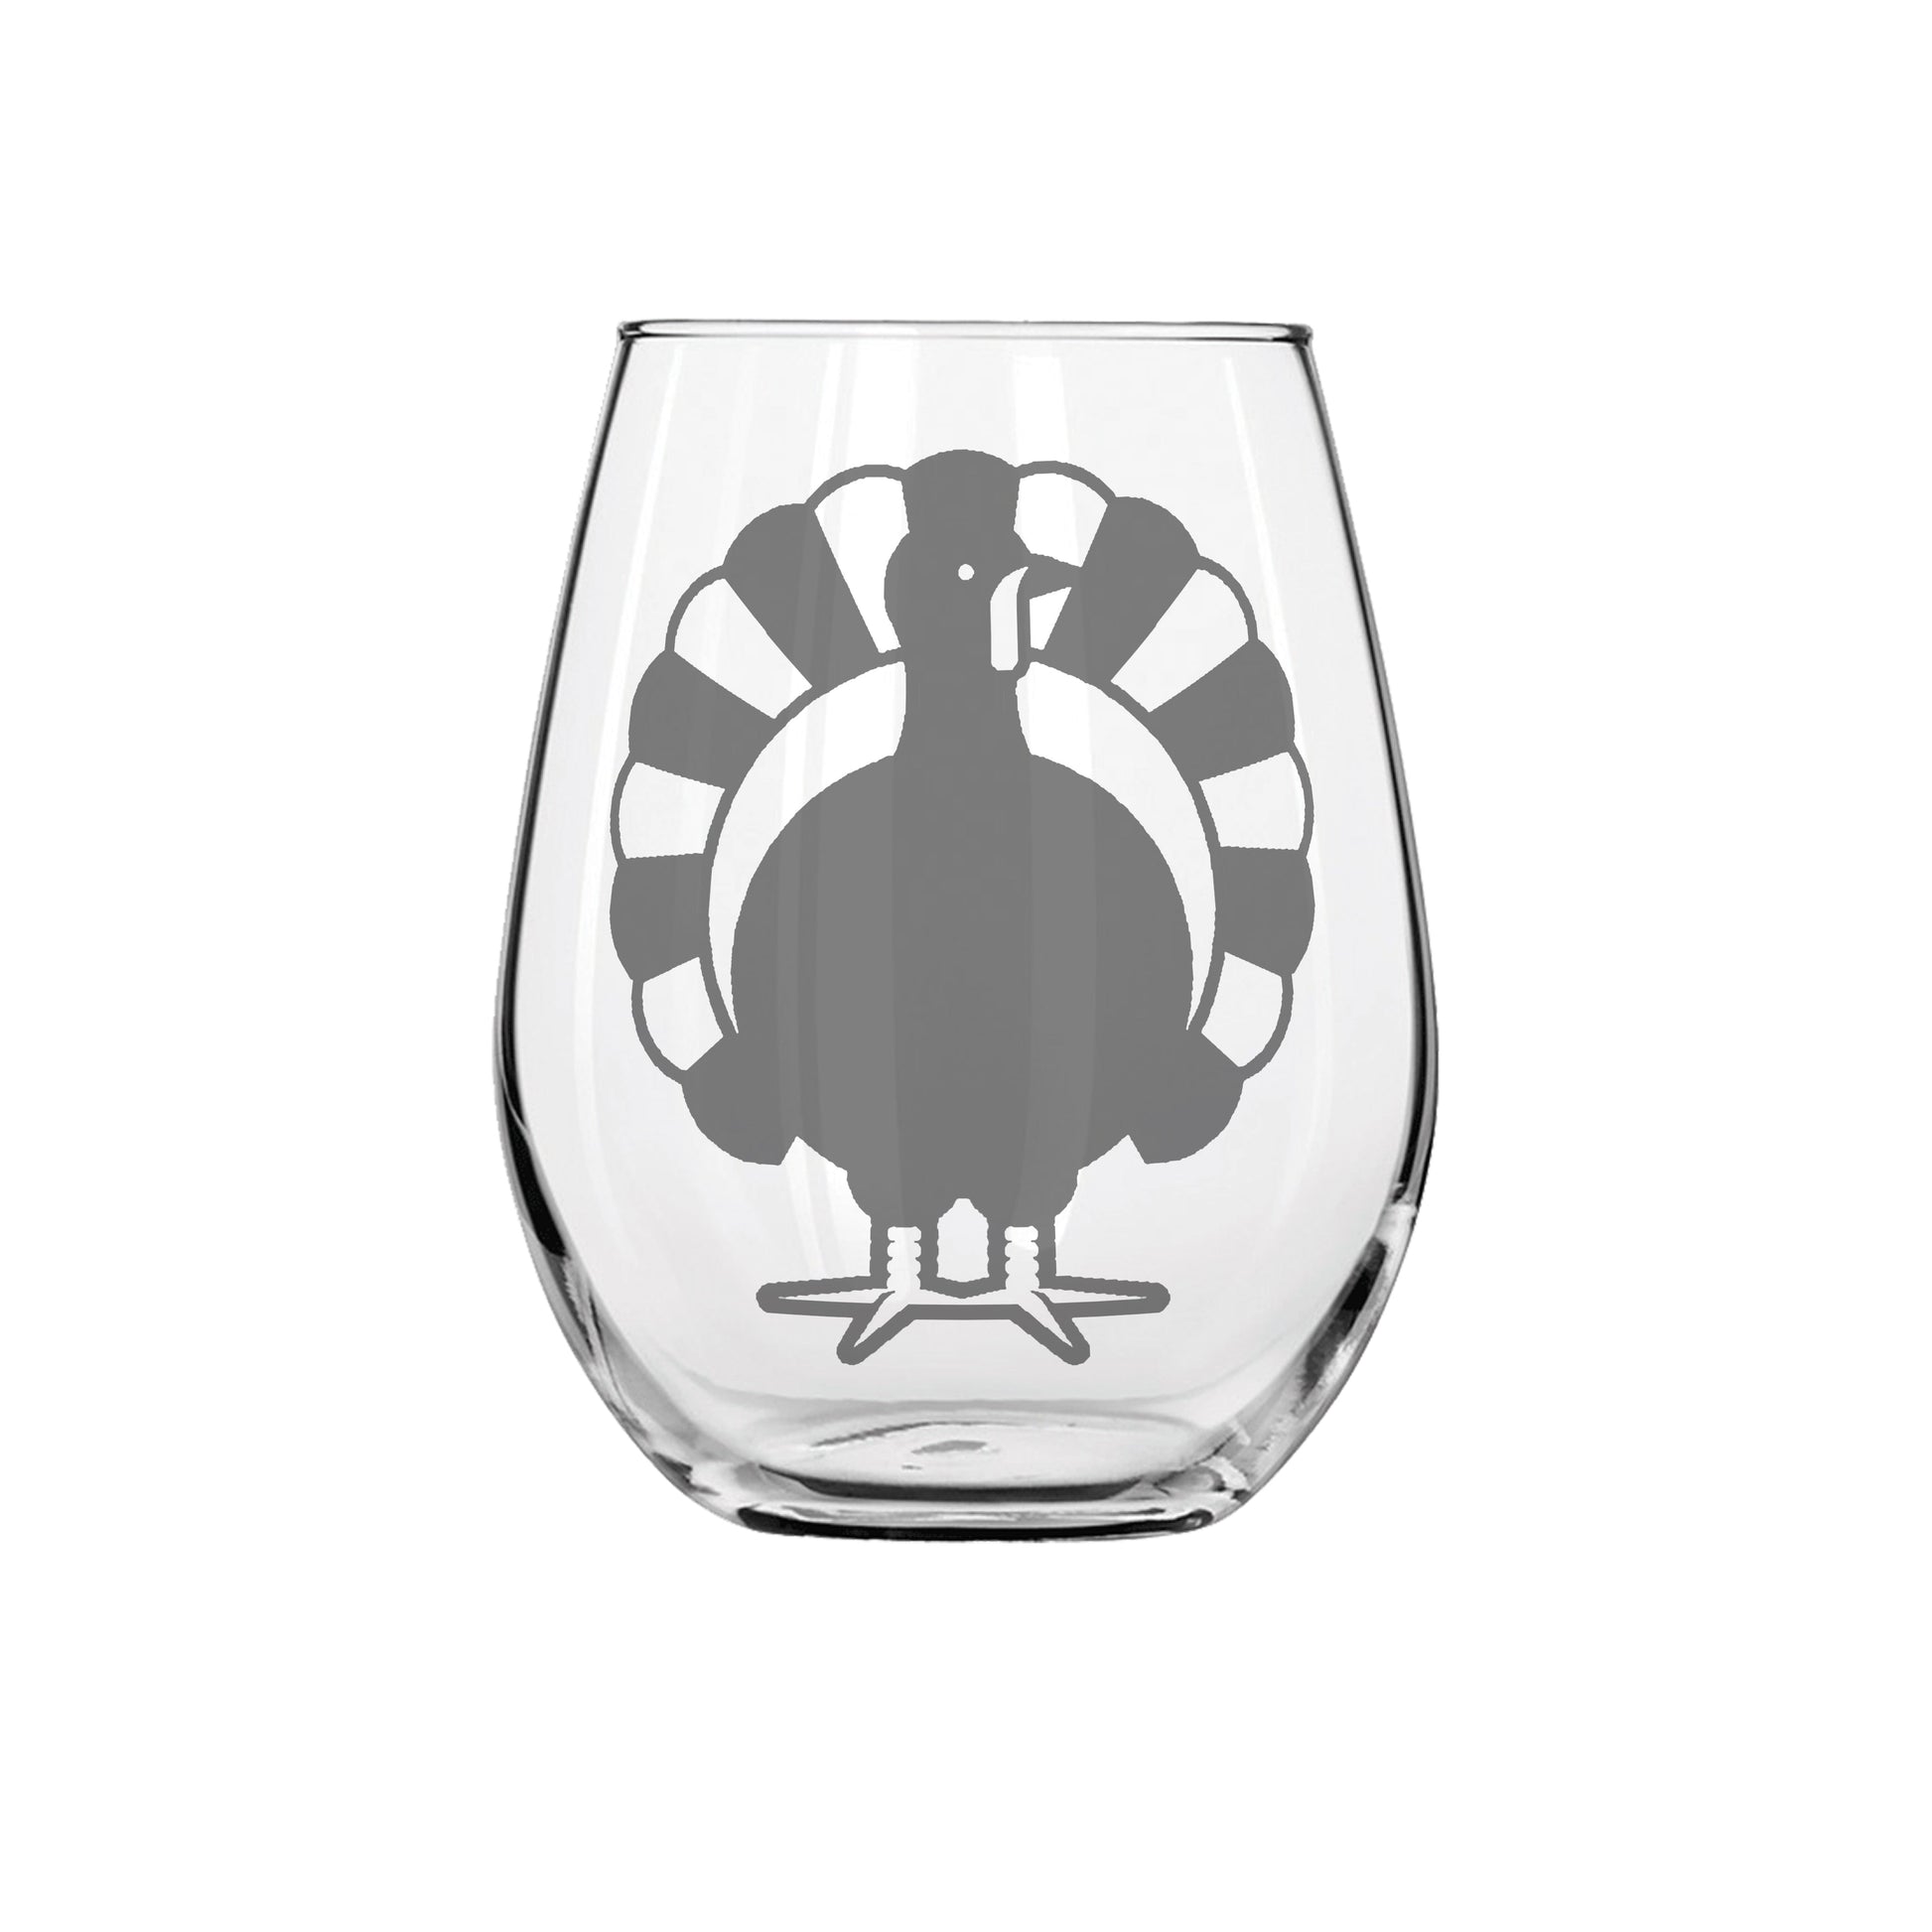 Turkey Sandblast Etched Stemless Wine Glass 20.5oz - Expressive DeZien 